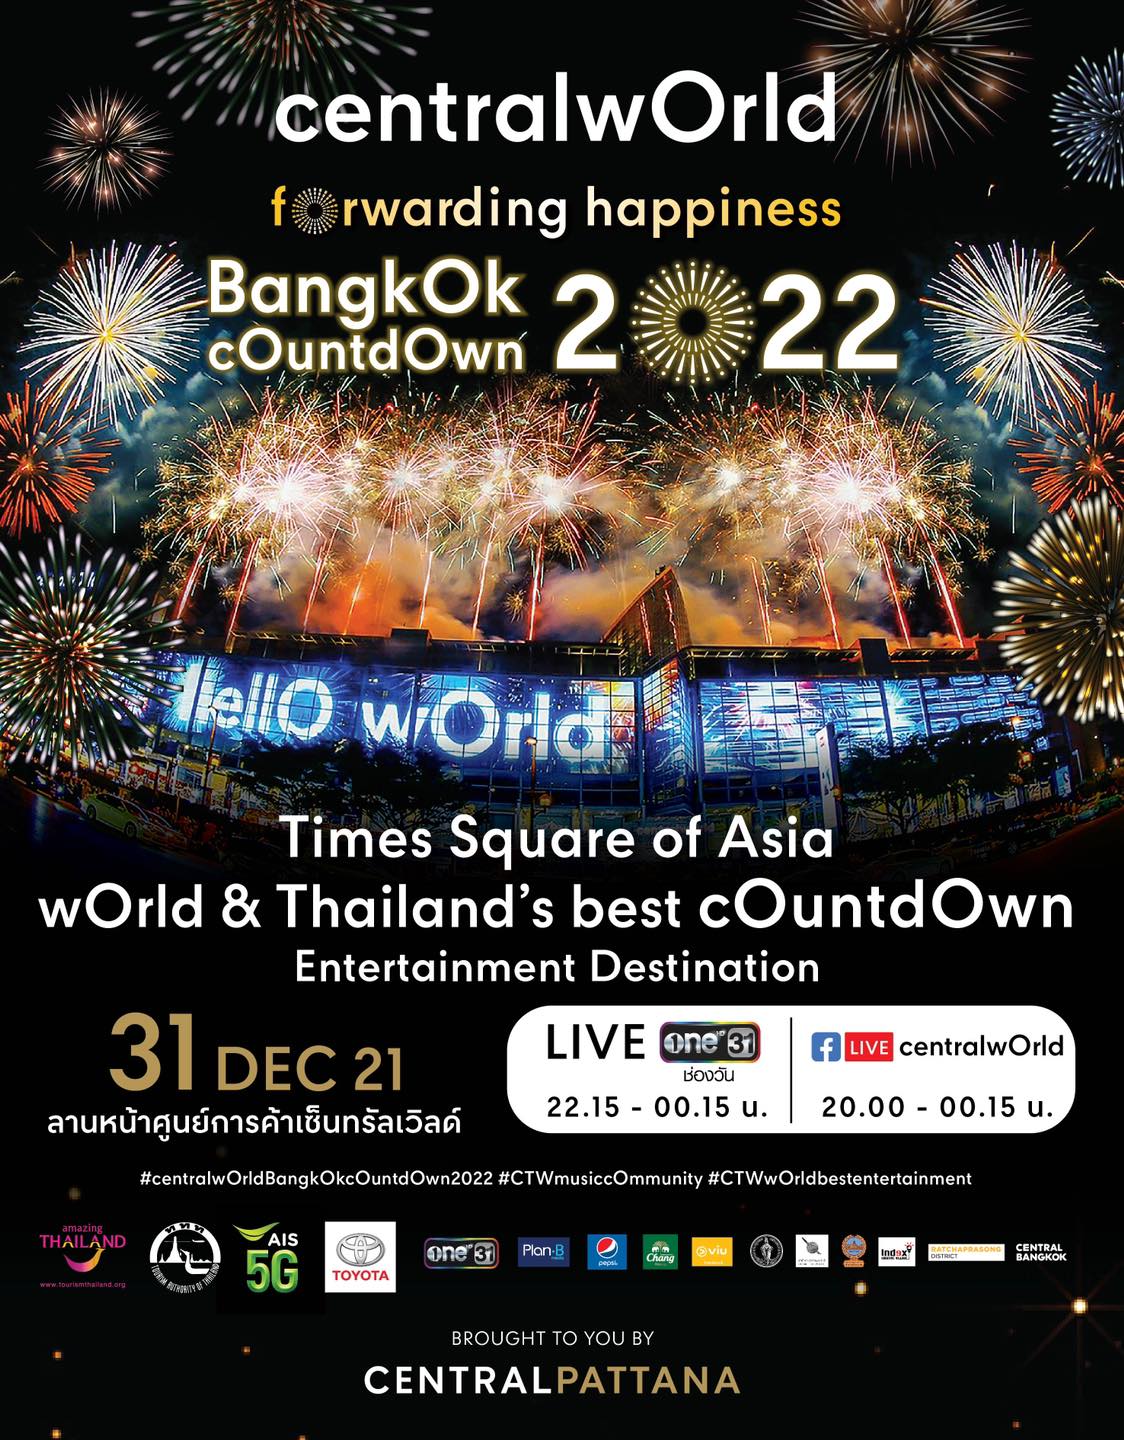 เตรียมตัวฉลองเคานต์ดาวน์ปีใหม่สุดยิ่งใหญ่อลังการในงาน “Centralworld Bangkok countdown 2022”